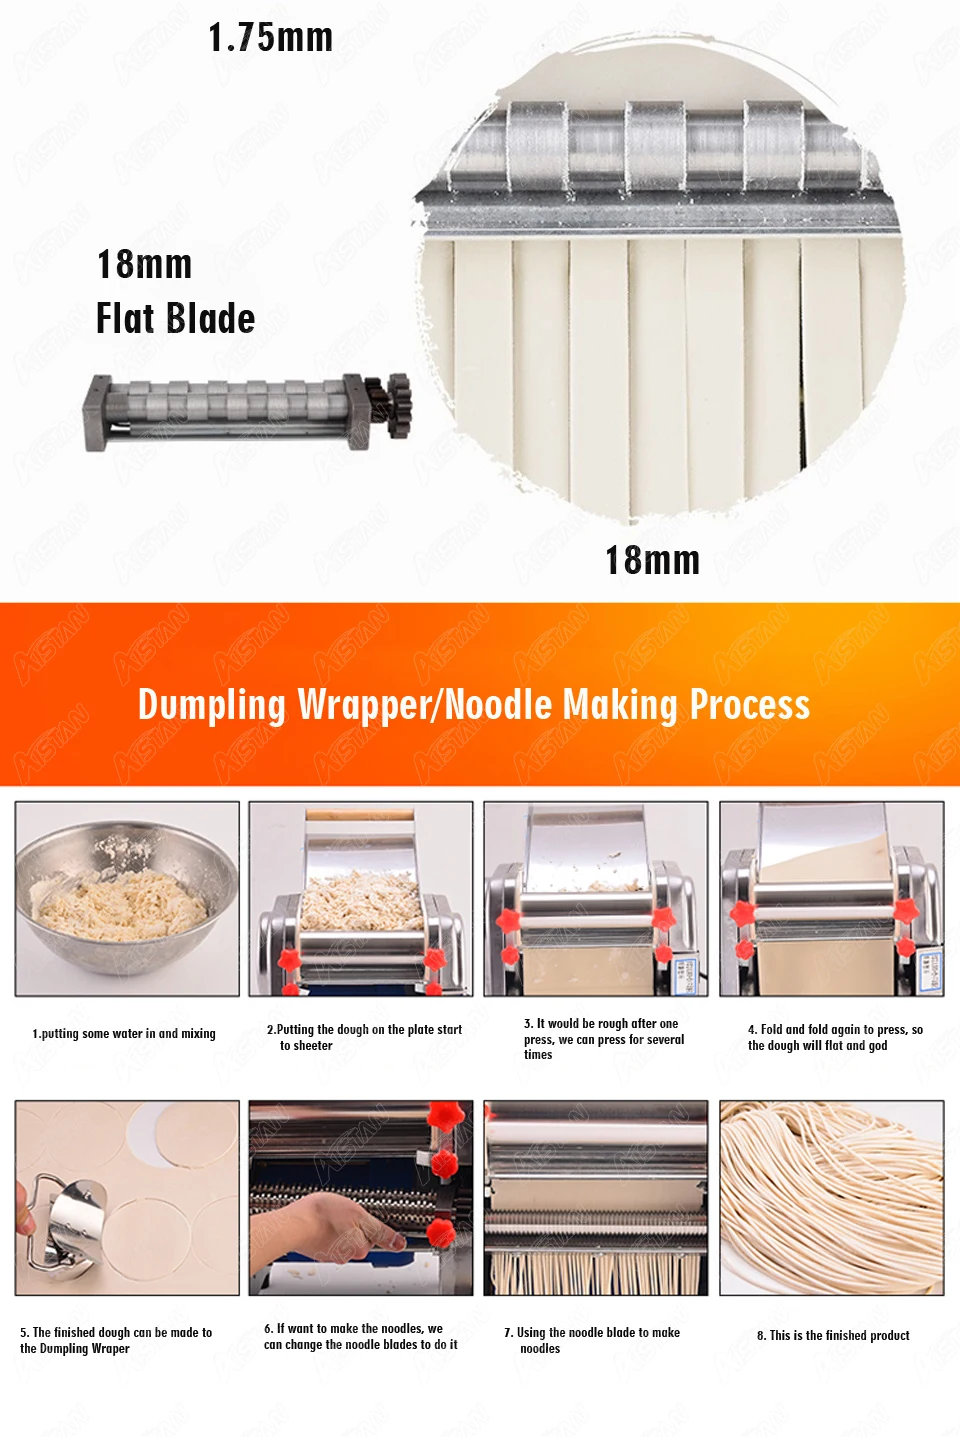 Noodle Cutter 1.5mm Round Cutter for 240 Model 110V Stainless Steel  Electric Noodle Making Pasta Maker, Noodle Width 24CM, Knife Length 24CM,  Noodle